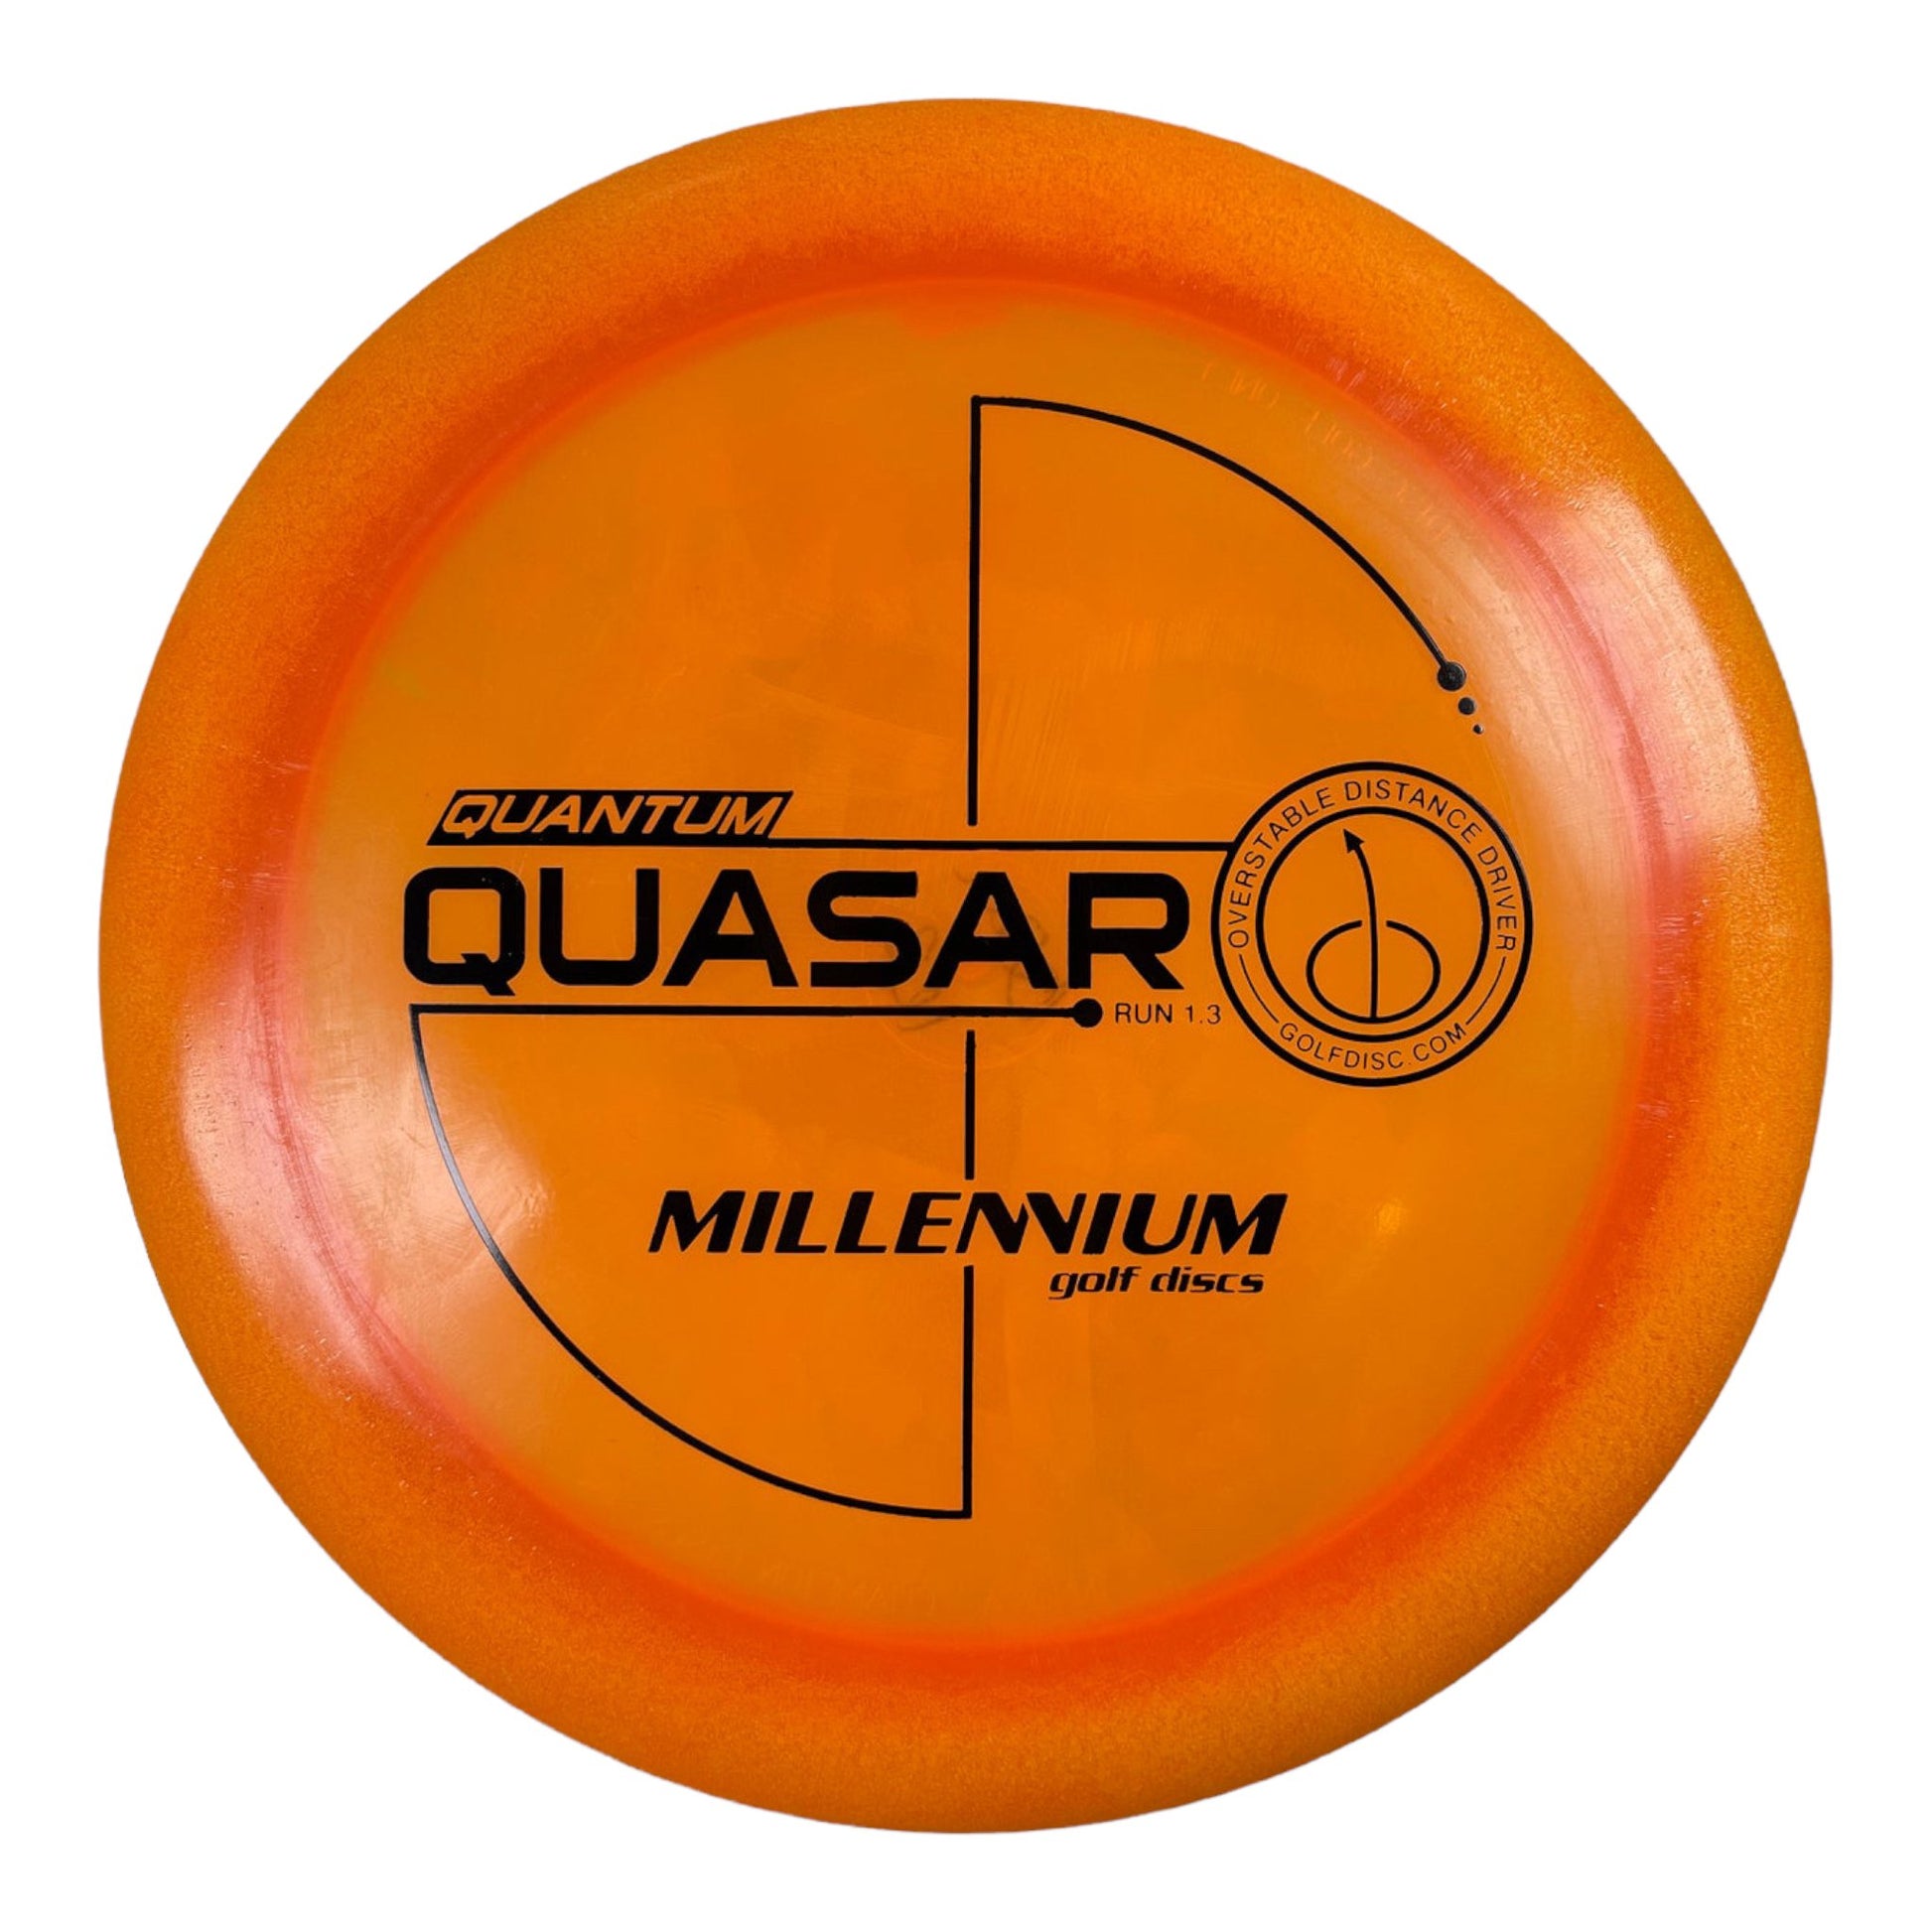 Millennium Golf Discs Quasar | Quantum | Orange/Black 162-175g